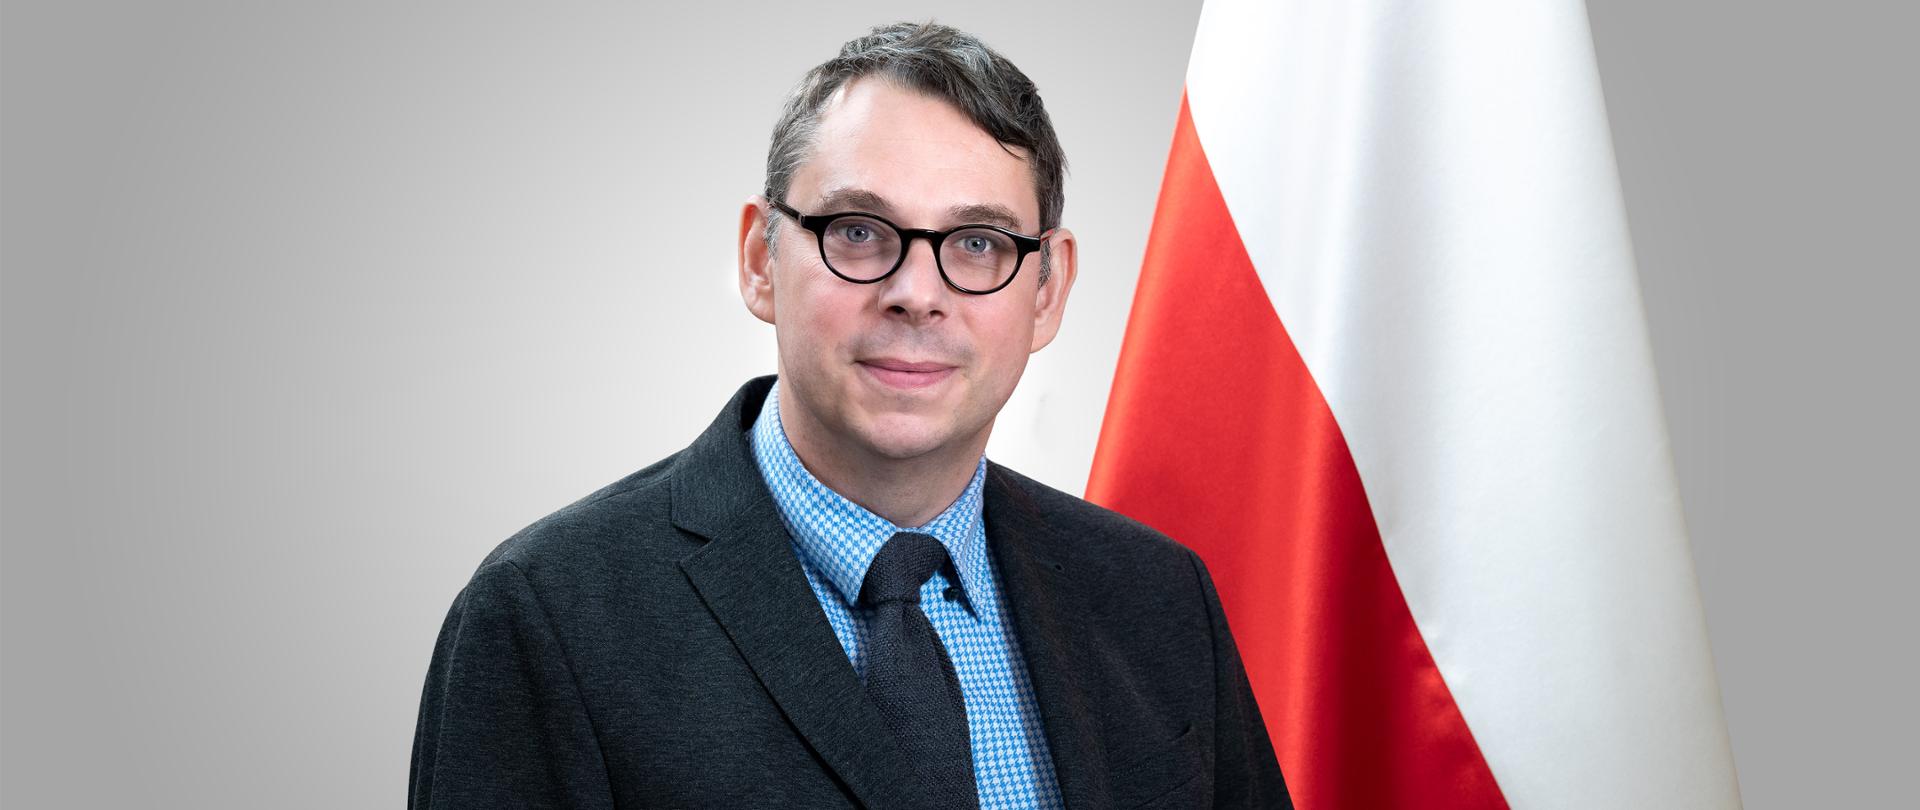 Undersecretary Jakub Wiśniewski